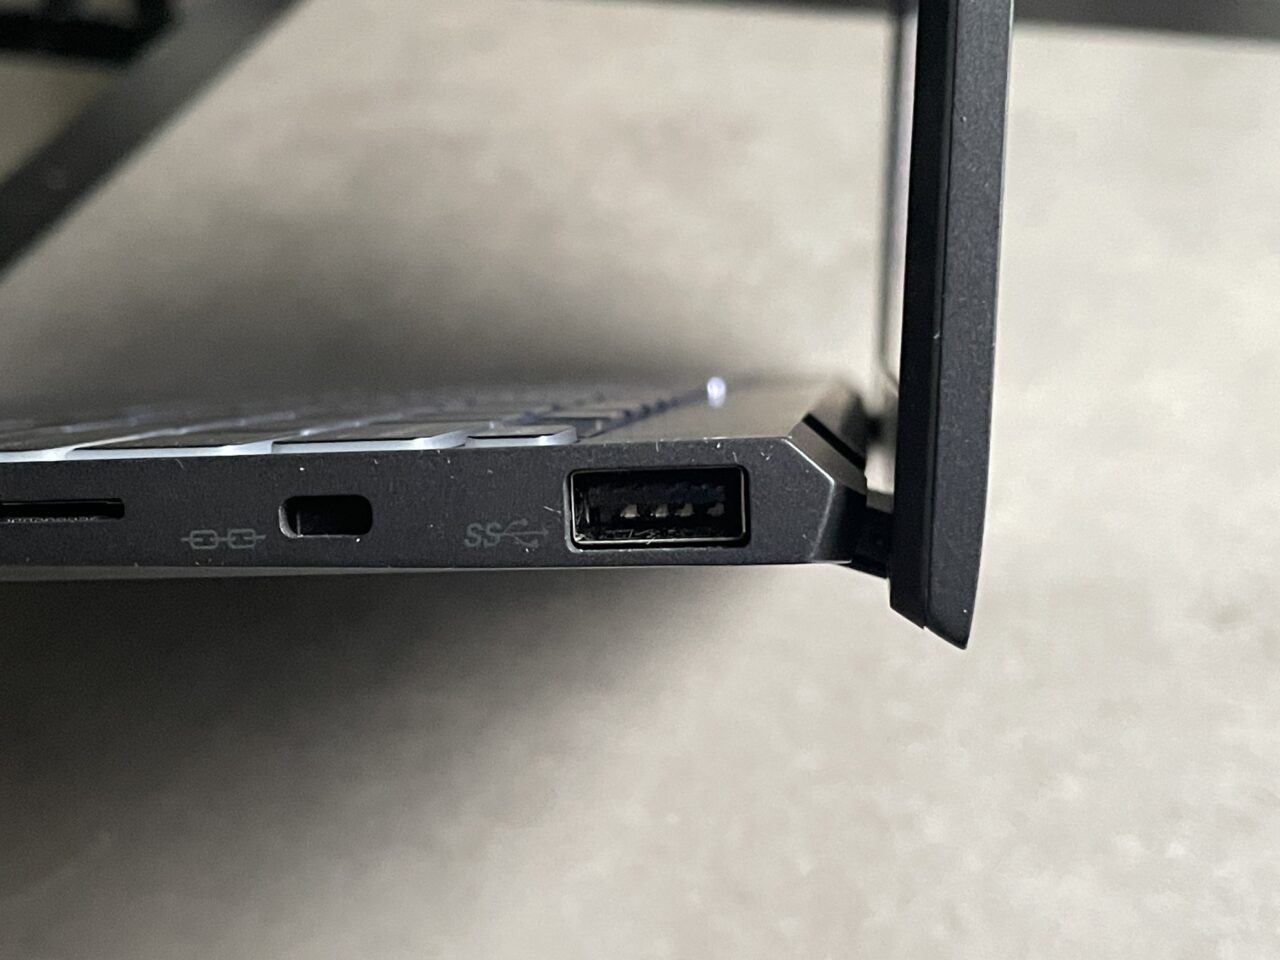 Zbliżenie na boczne porty laptopa z zewnętrznym dyskiem twardym podłączonym do portu USB 3.0.